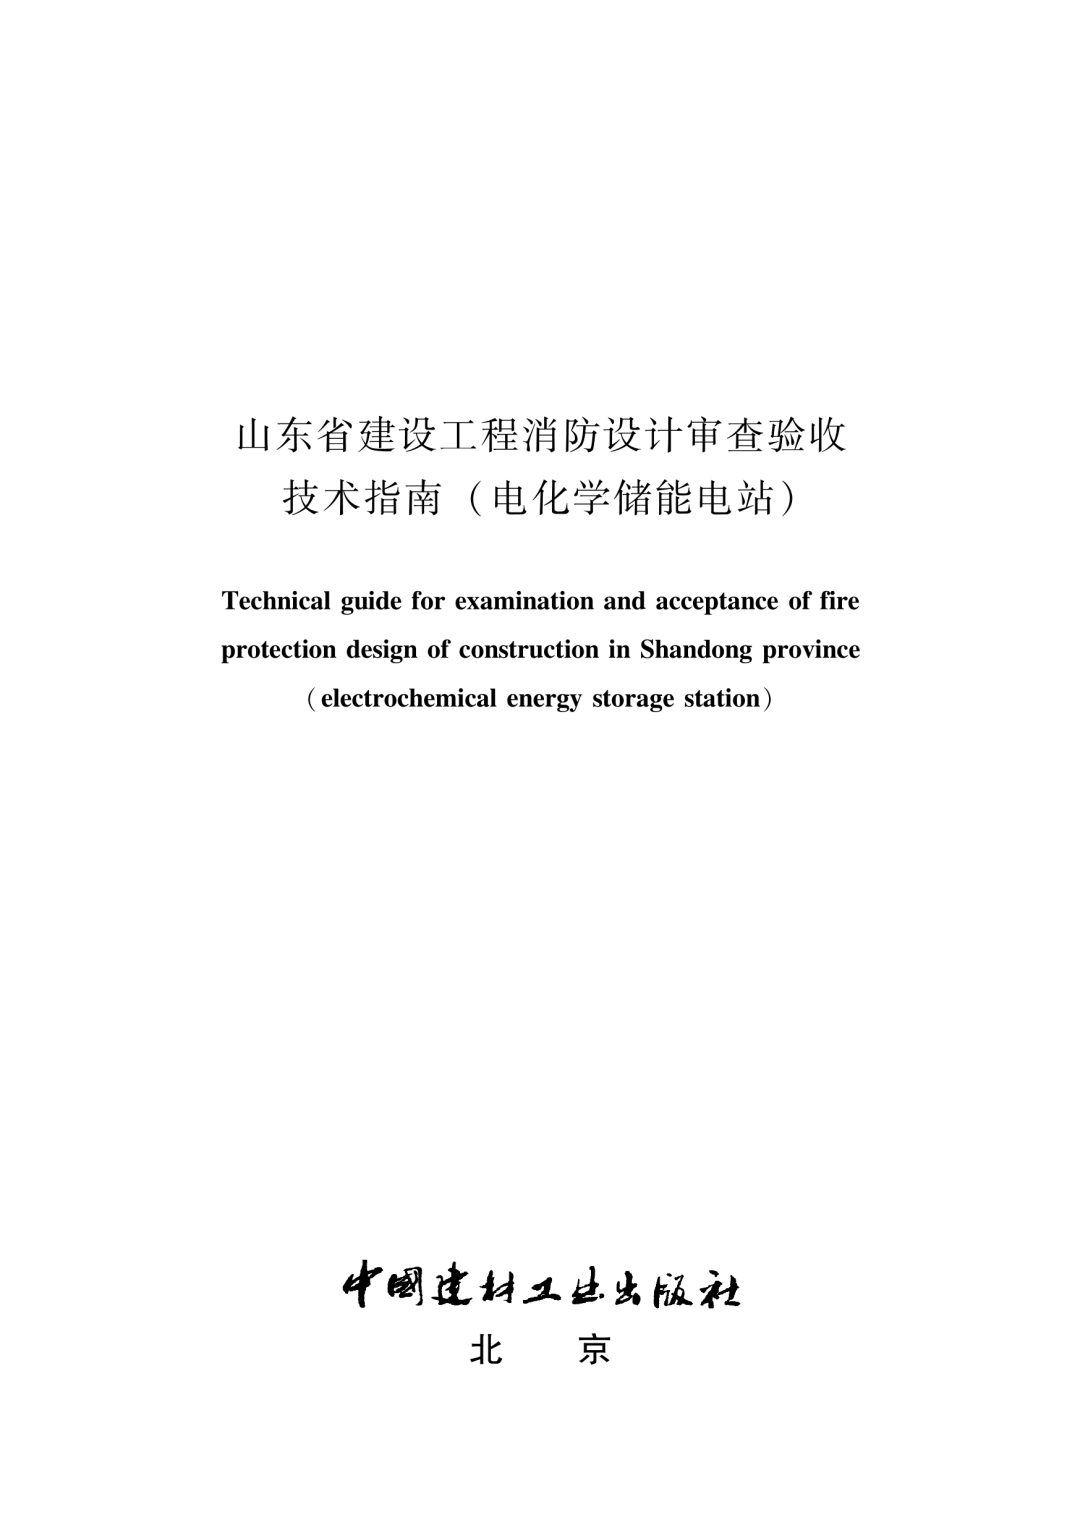 山东省发布全国首个电化学储能电站消防审验技术指南